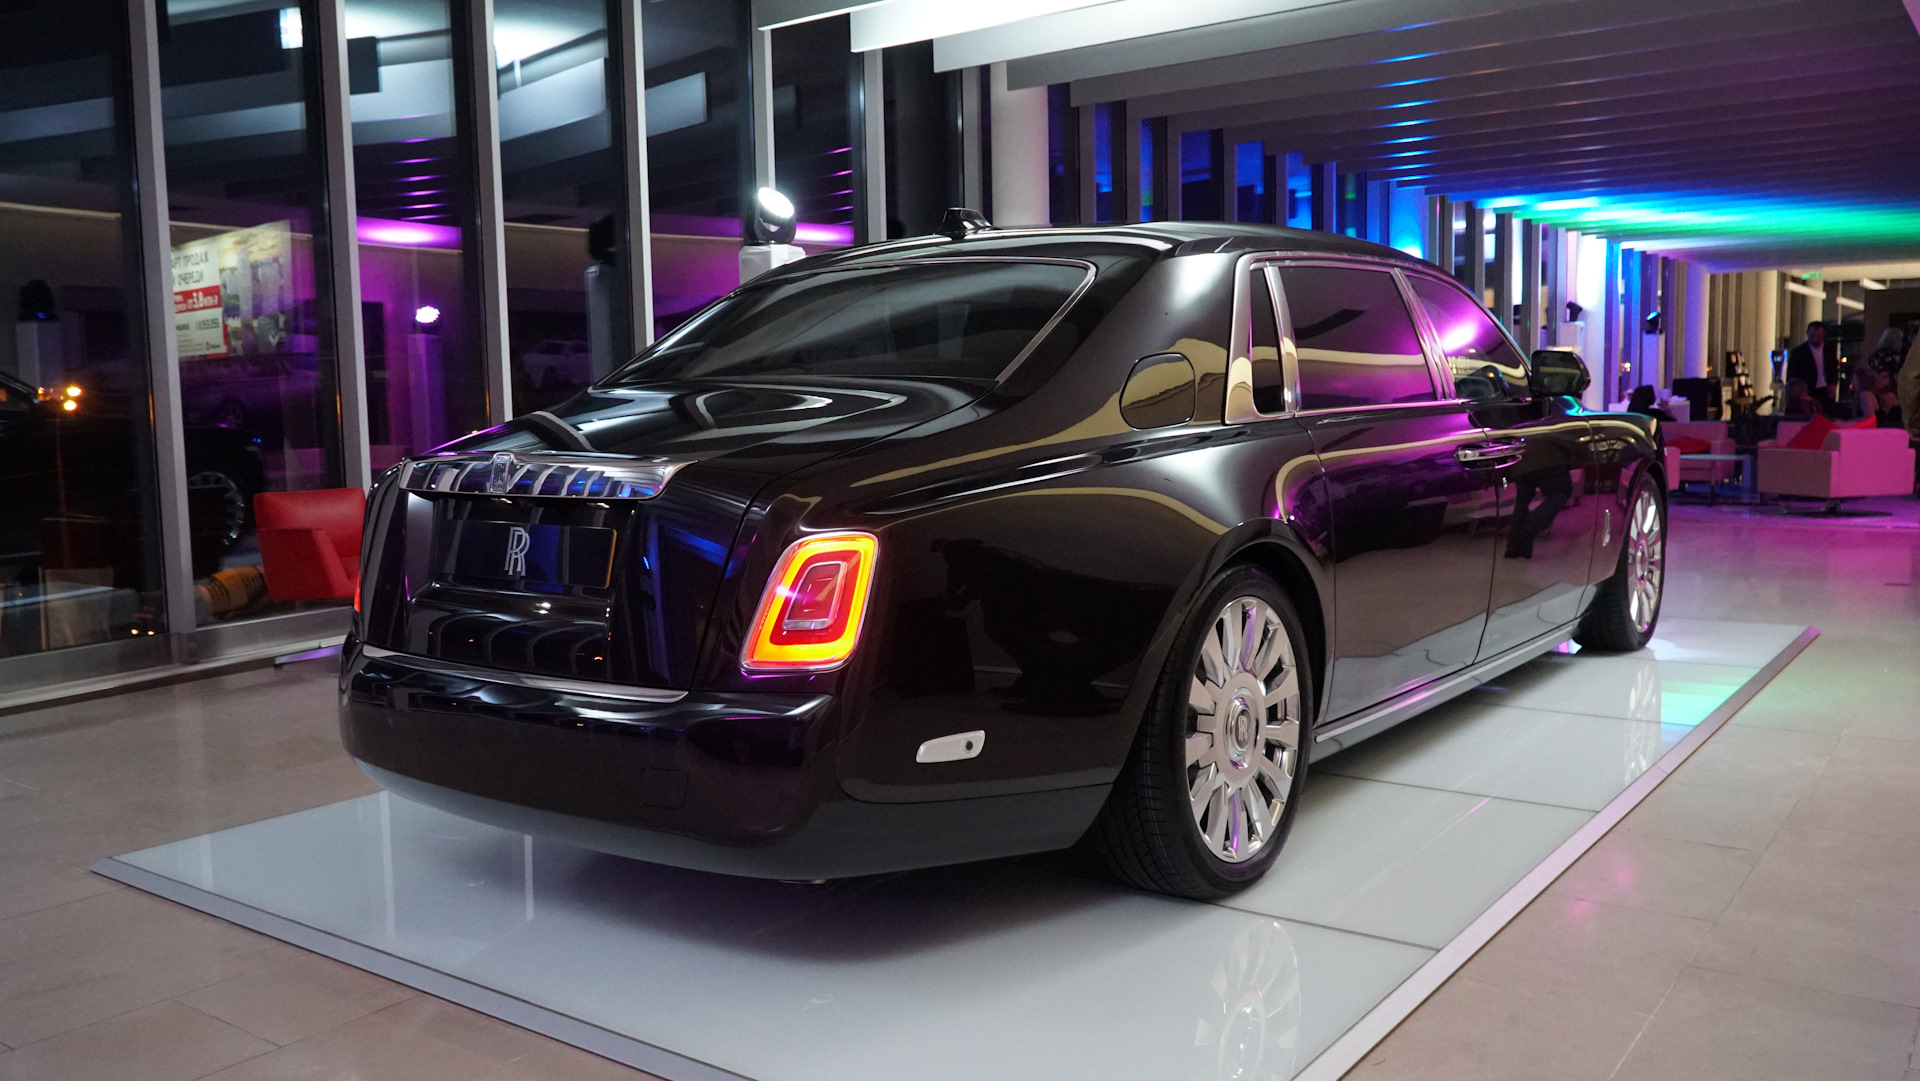 Rolls Royce Phantom 2020 черный